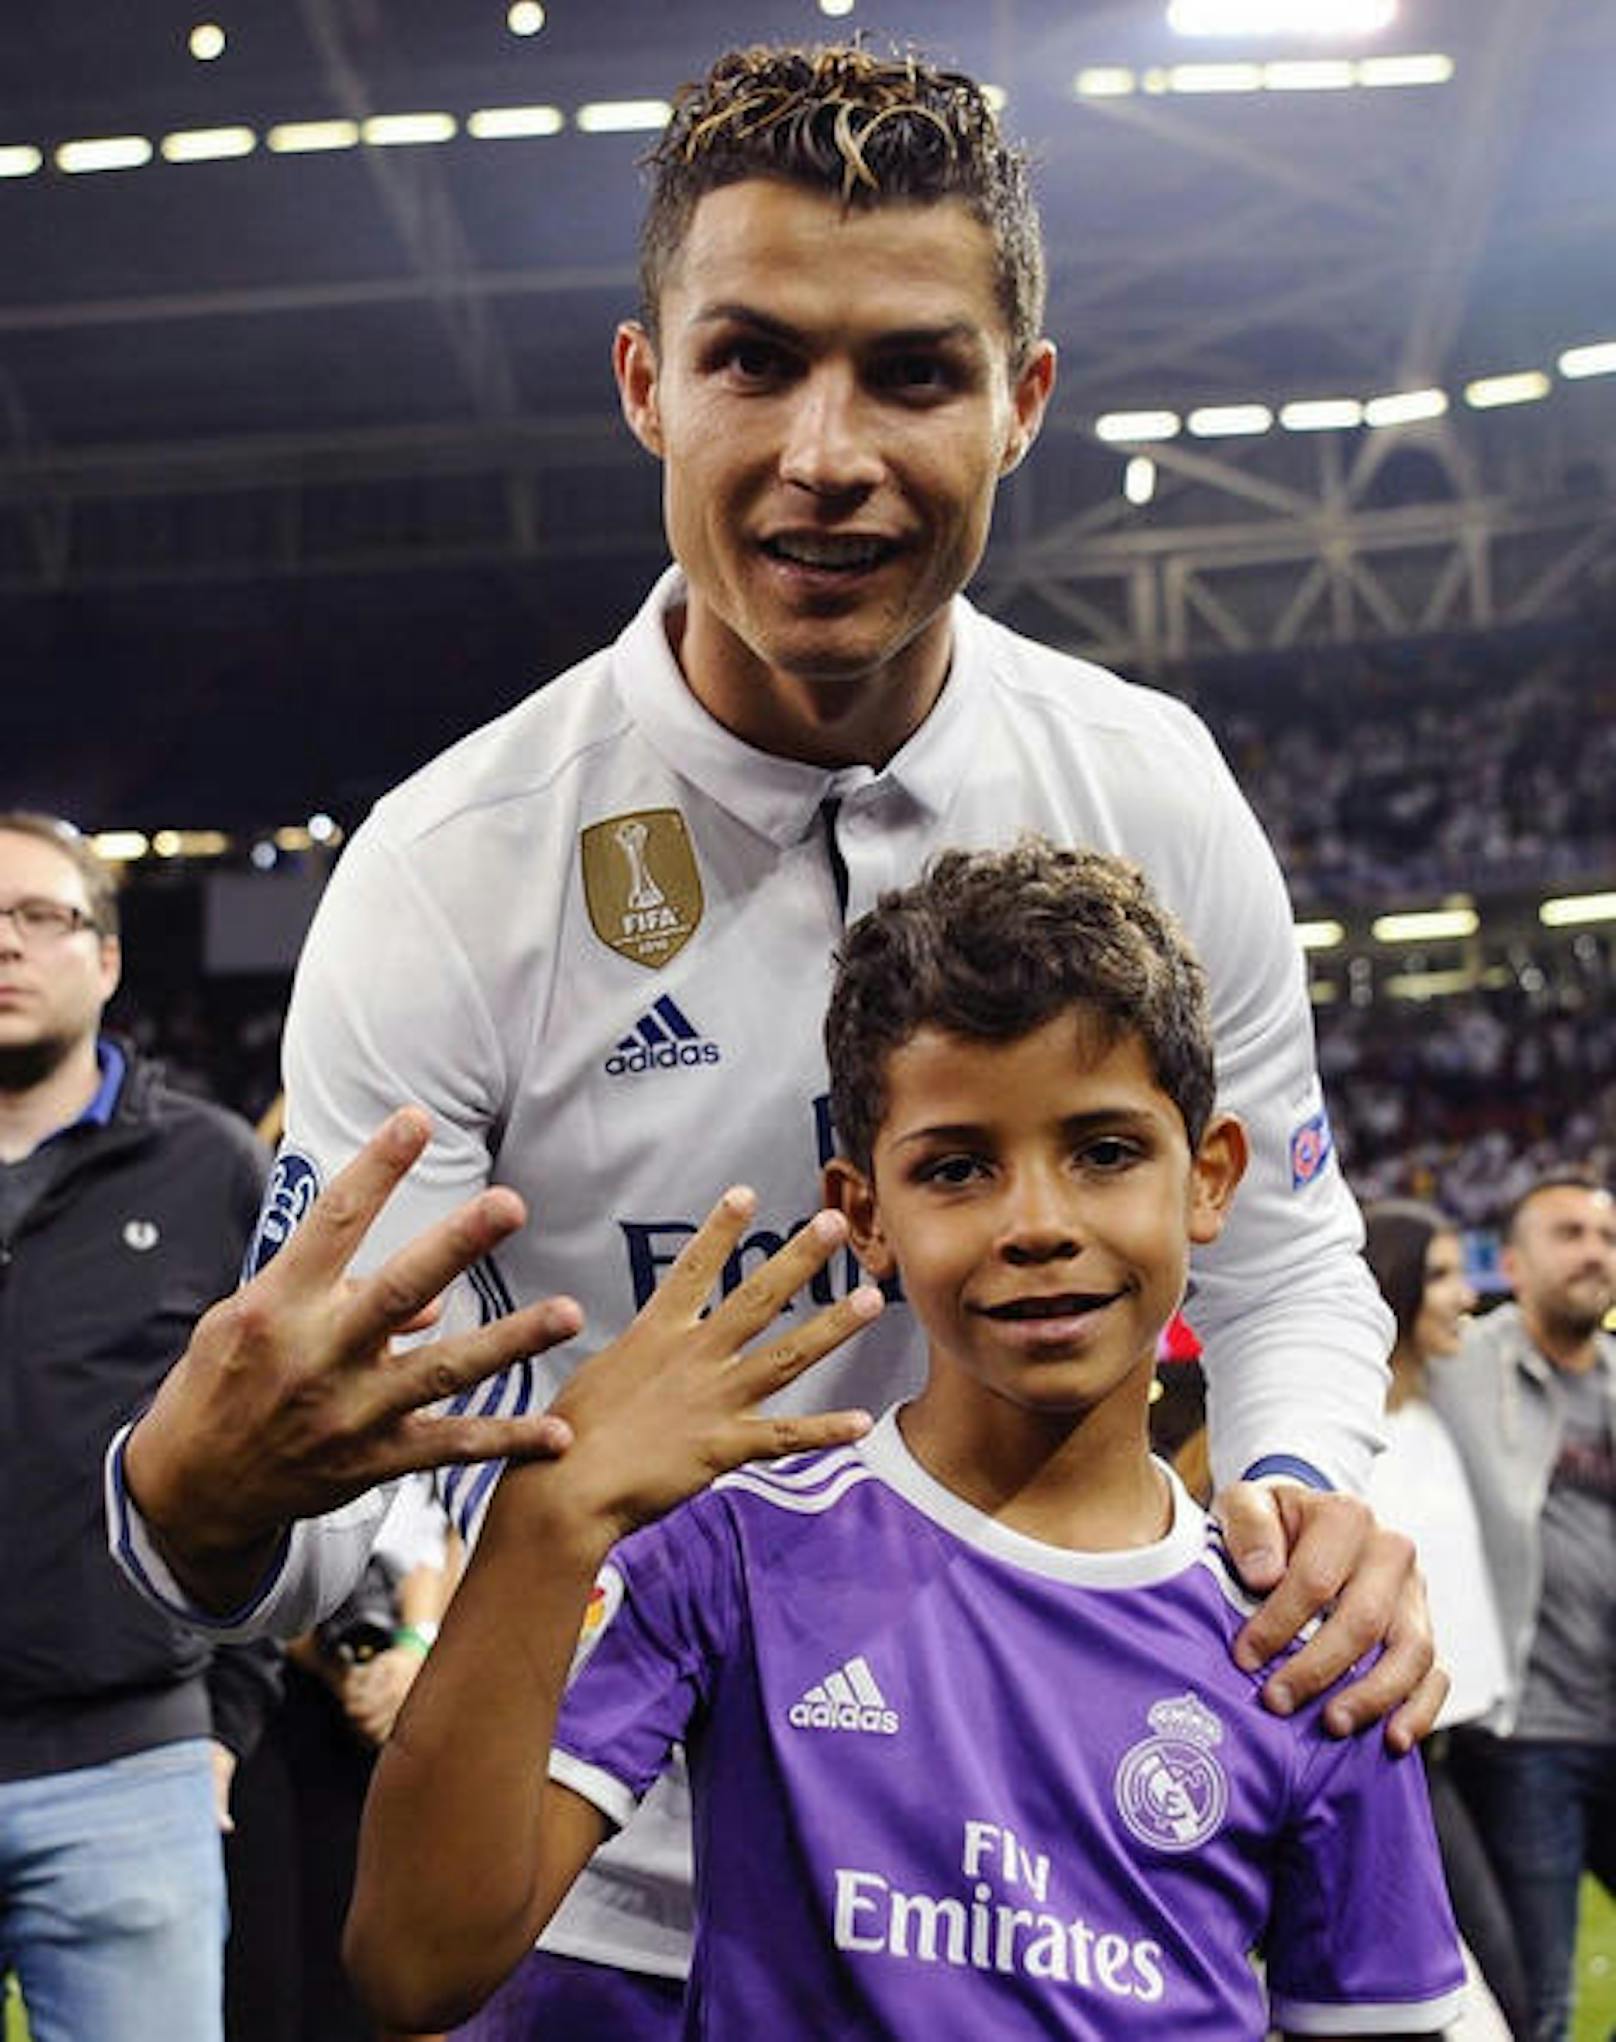 Vier Mal hat Ronaldo bereits die Champions League gewonnen. Sein sechsjähriger Sohn ist sichtlich stolz auf den Papa.